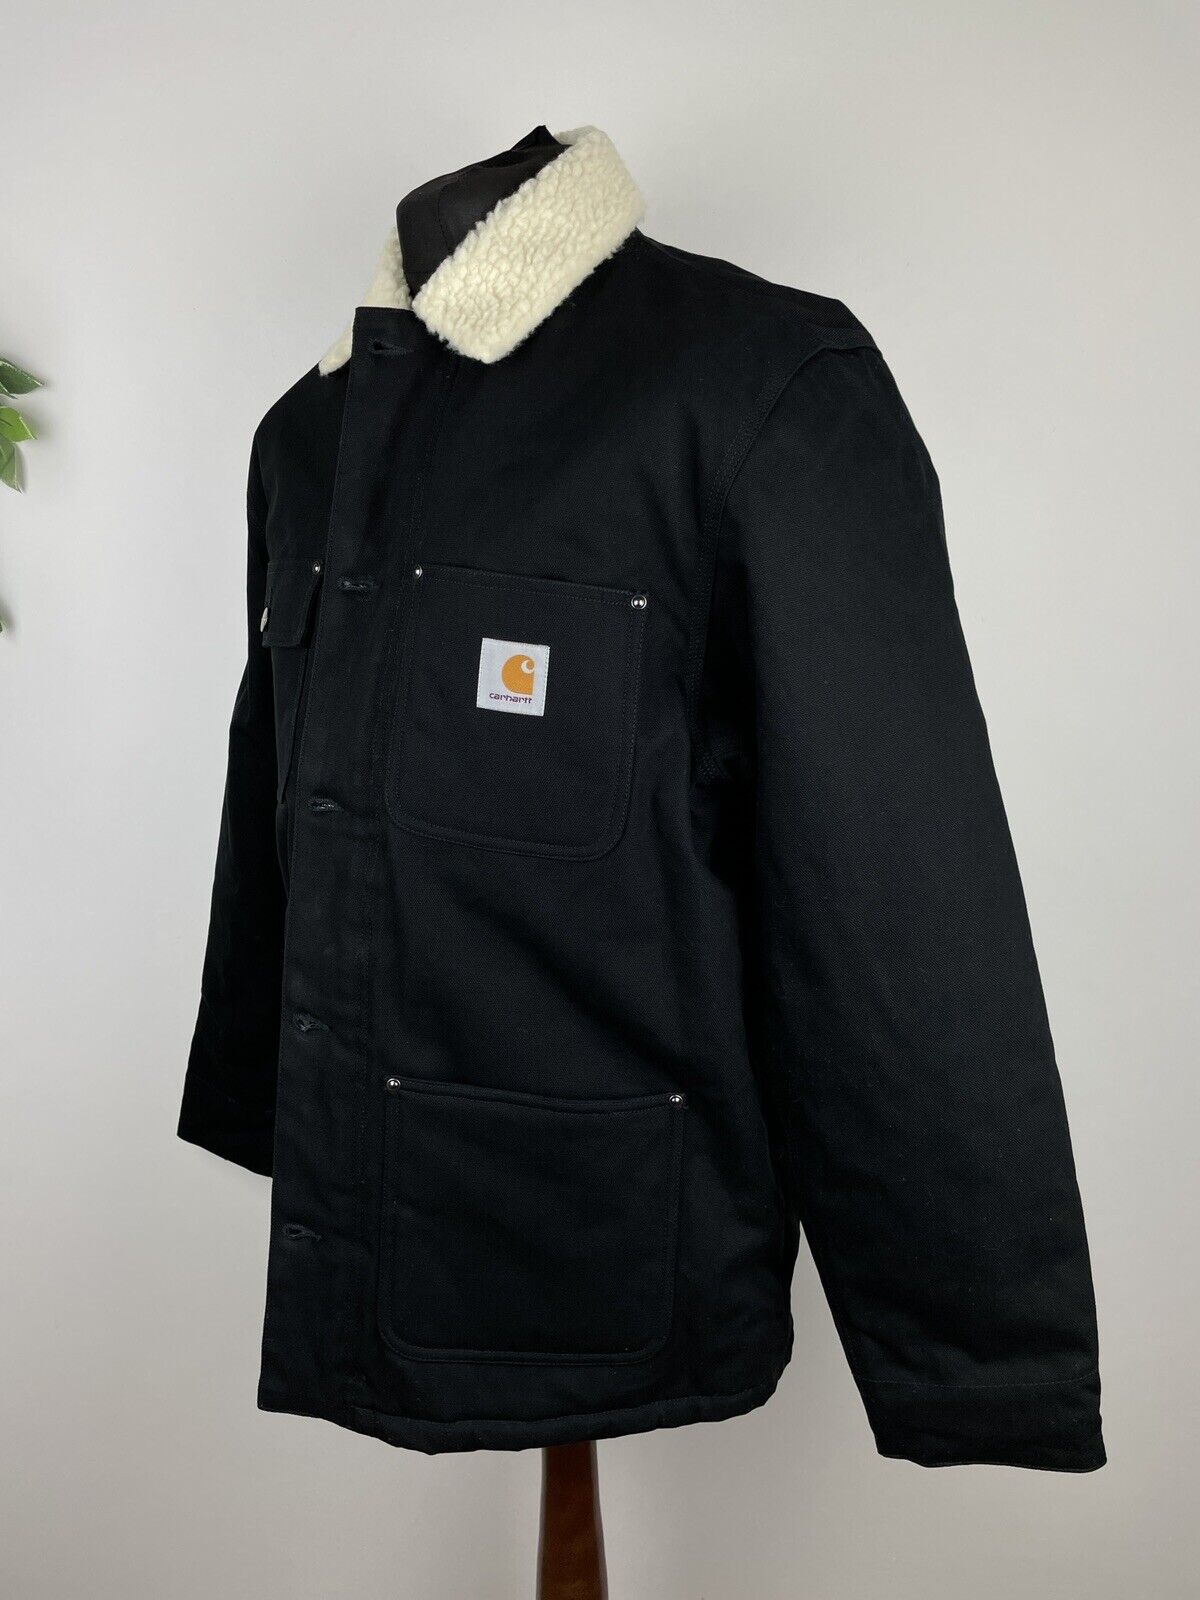 Carhartt WIP Fairmount Faux Shearling Jacket / Coat Black VARIOUS 